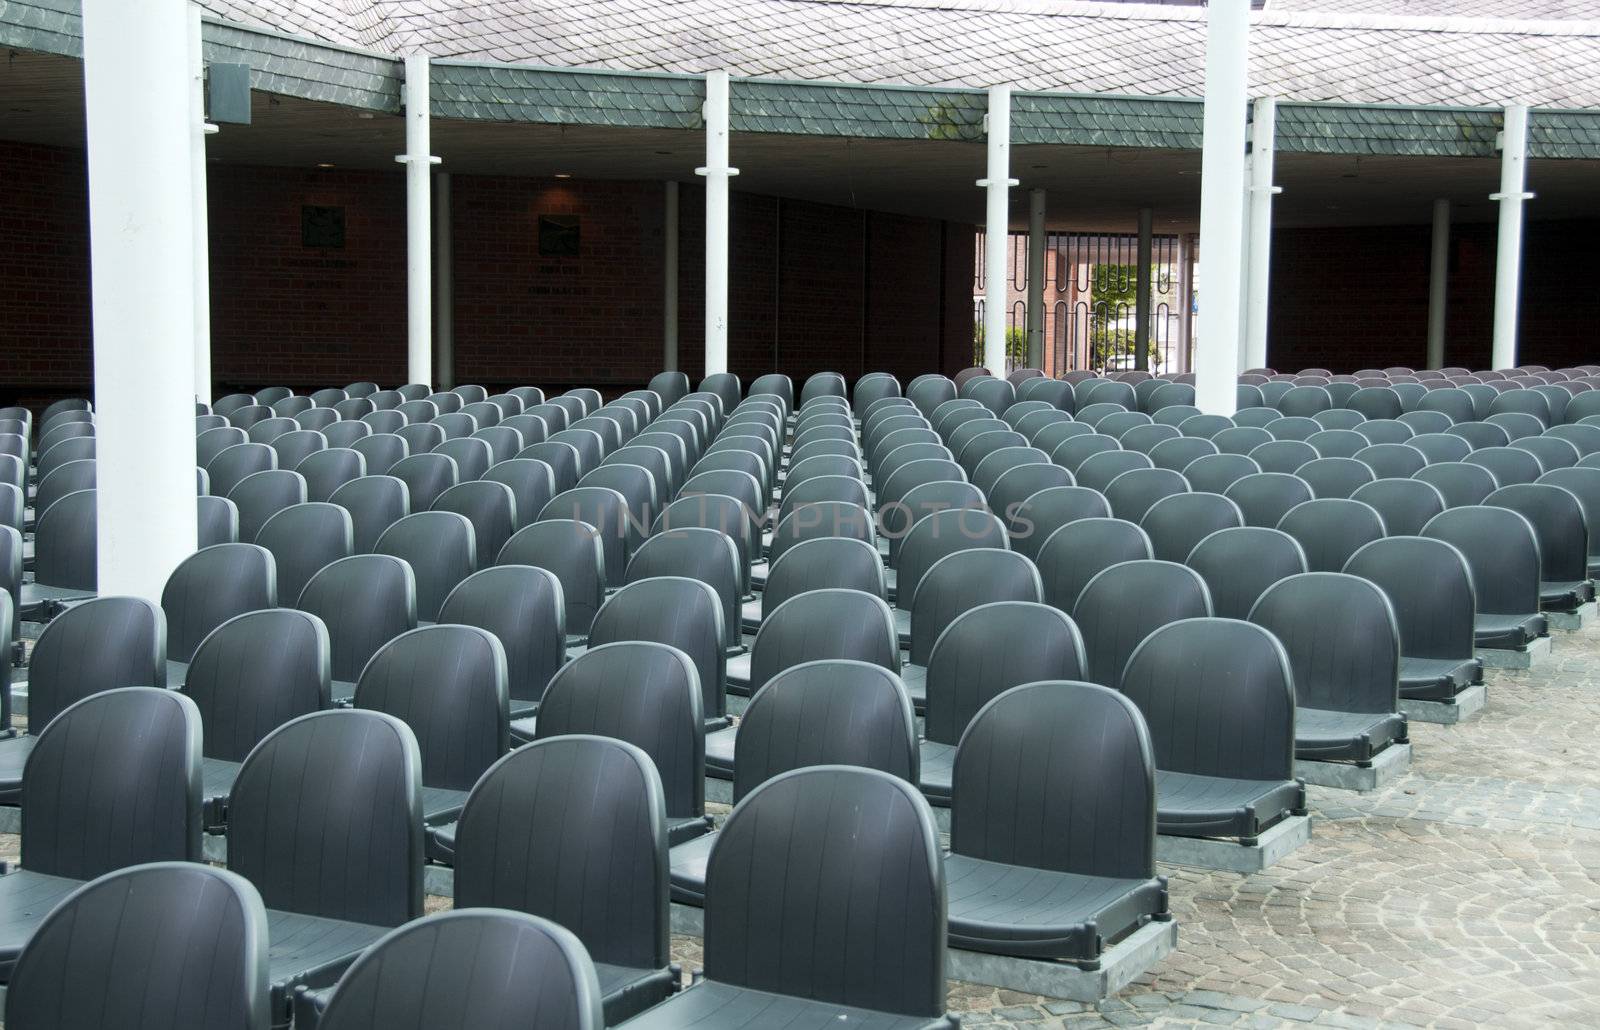 row of empty seats in stadium